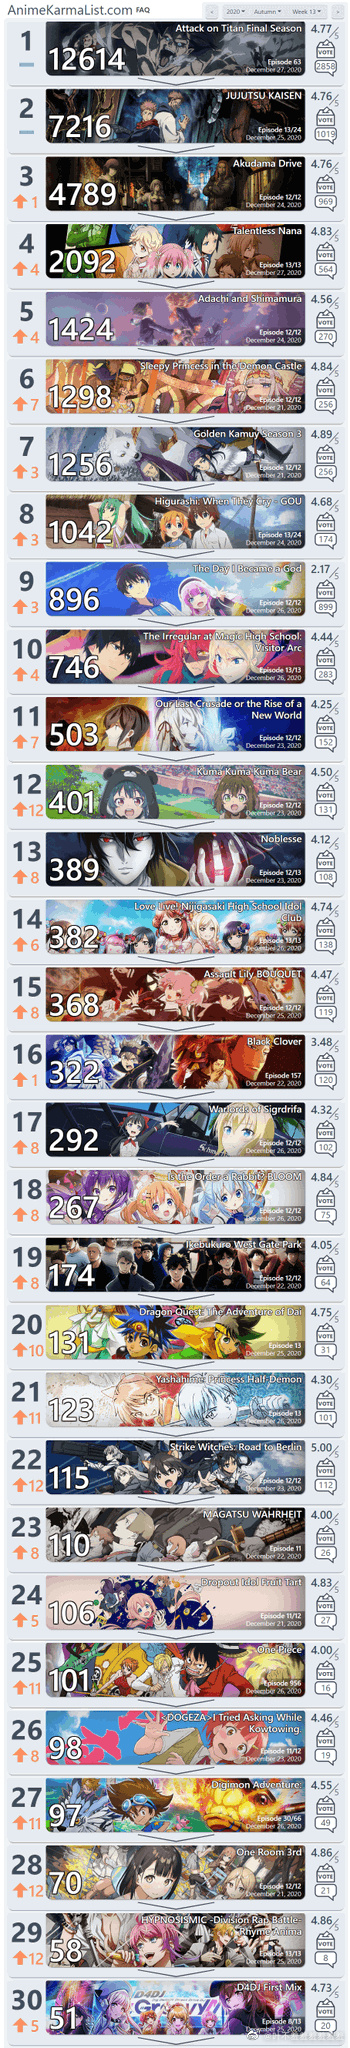 r/anime 2020年秋季30强动画第13周排行榜公开